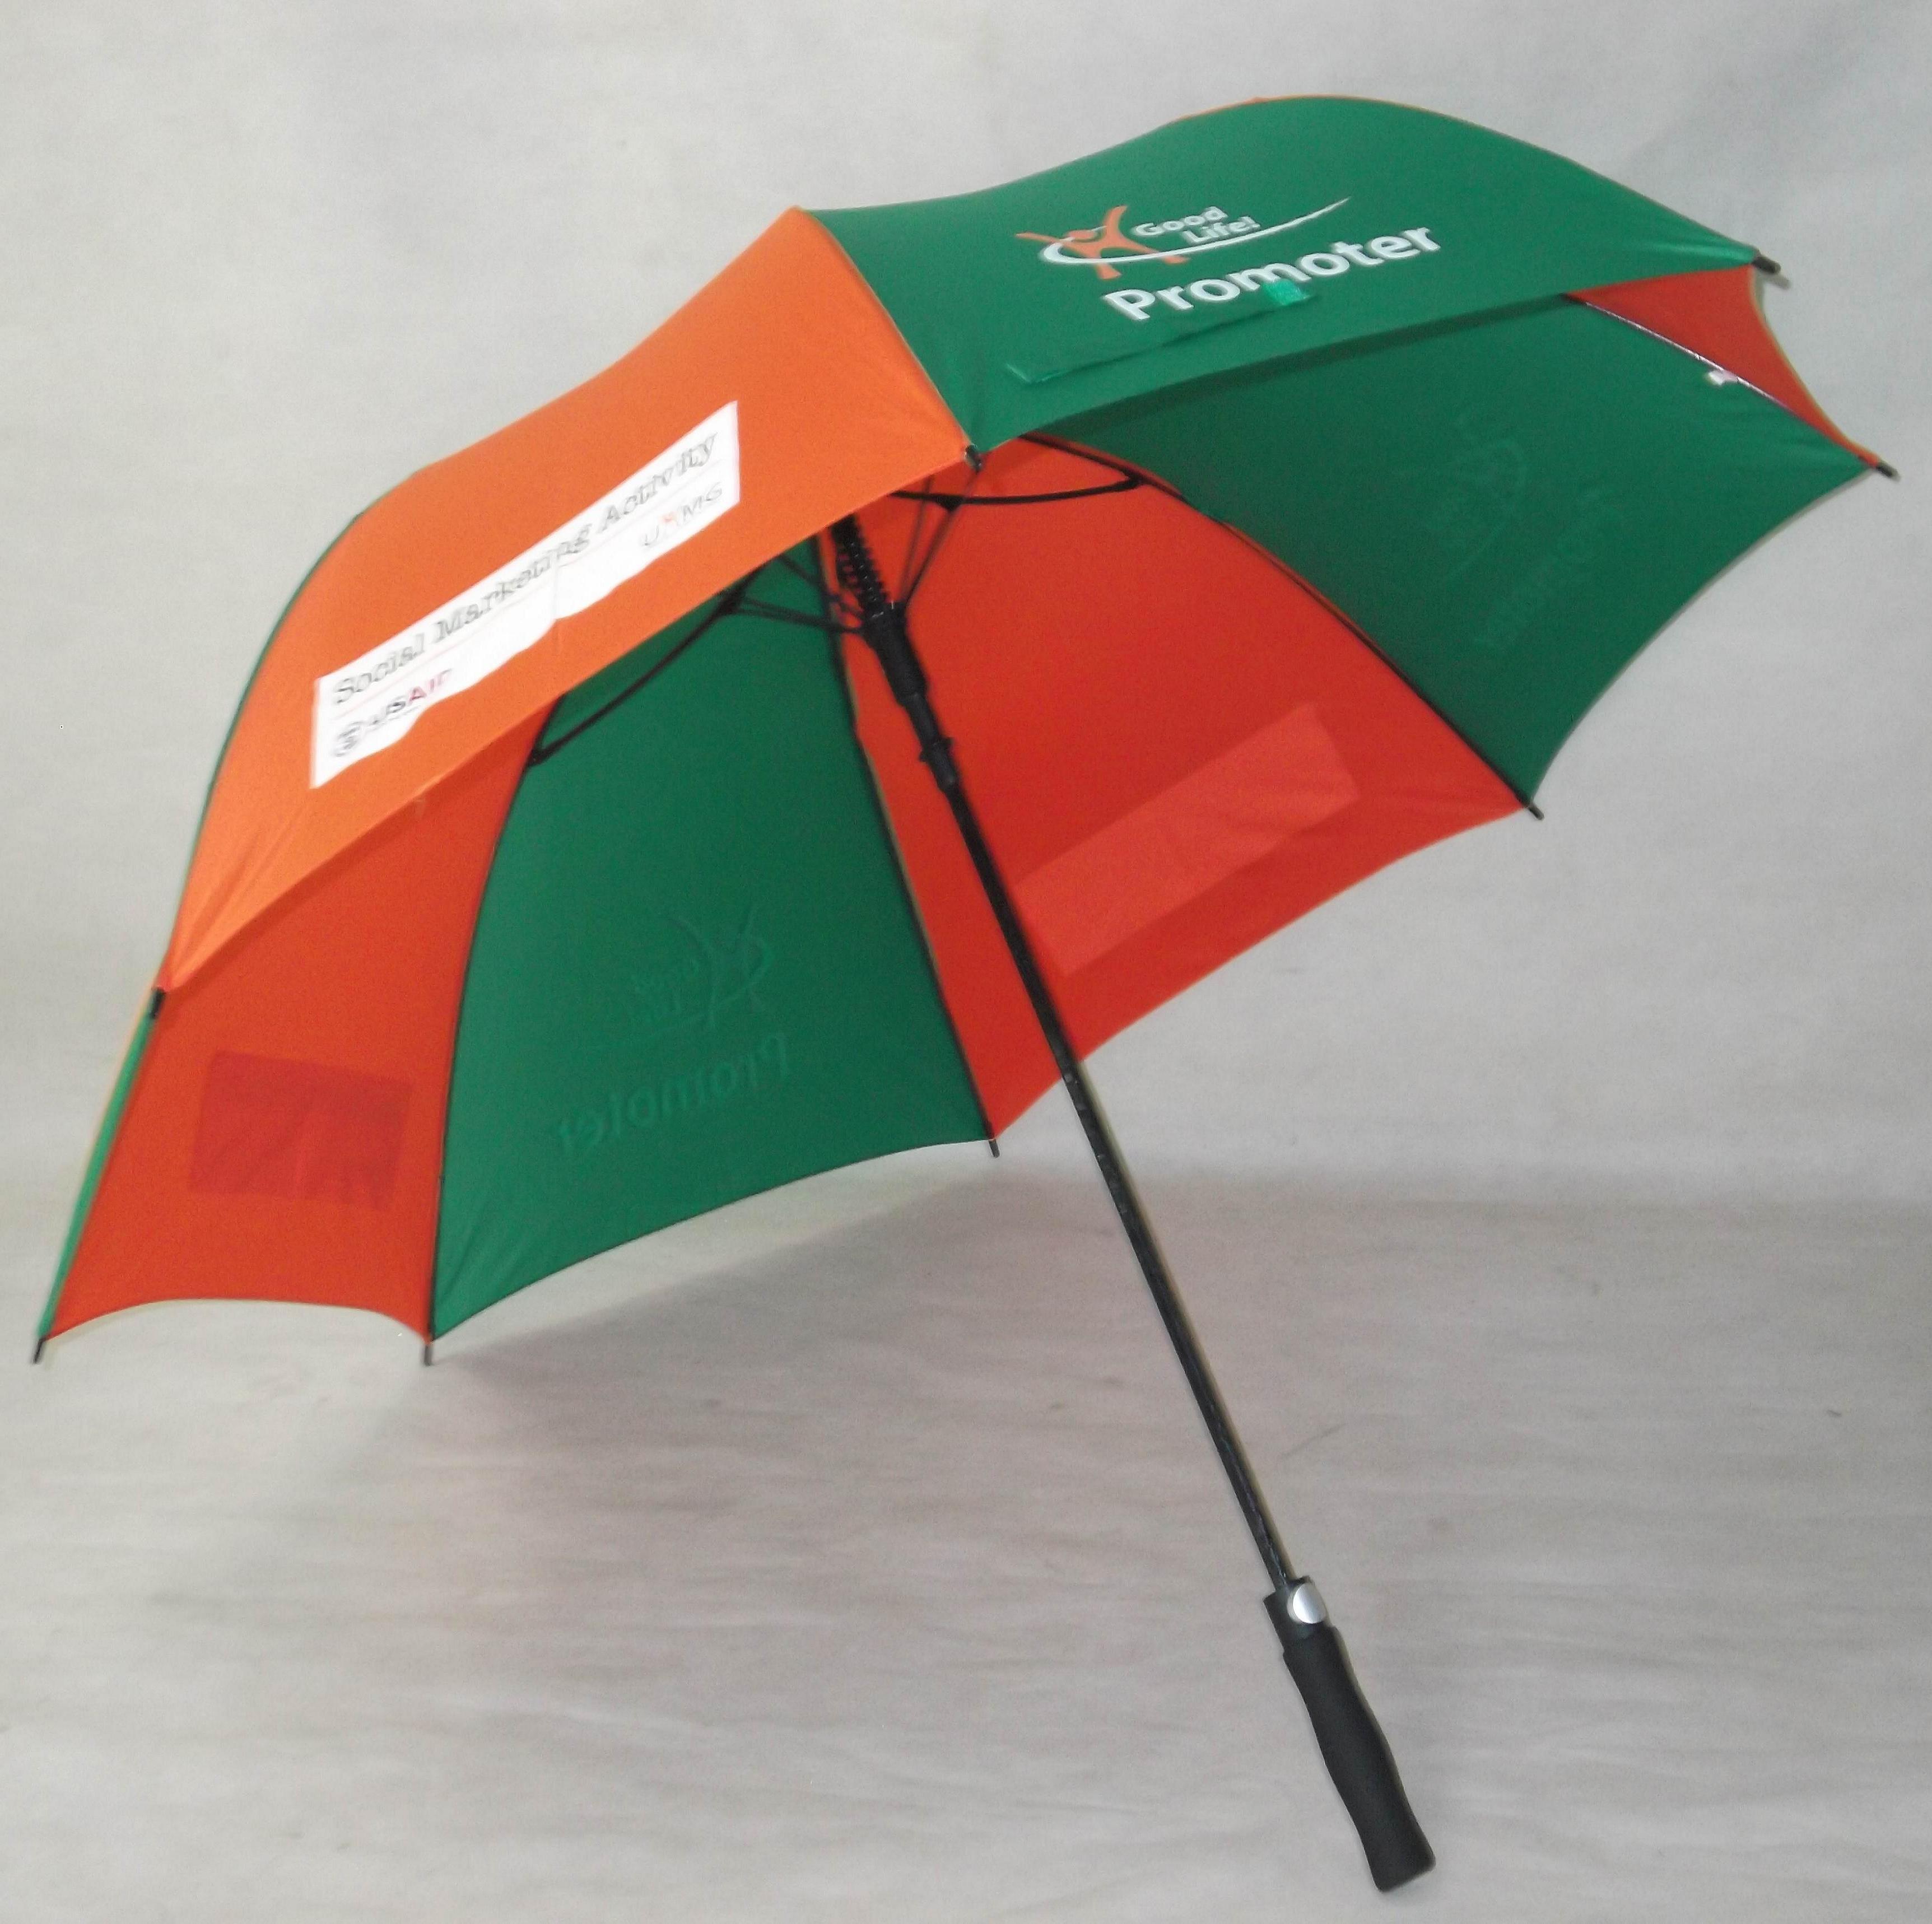 厂家推荐高品质双层高尔夫伞 超大防风防雨全纤维自动高尔夫伞示例图1